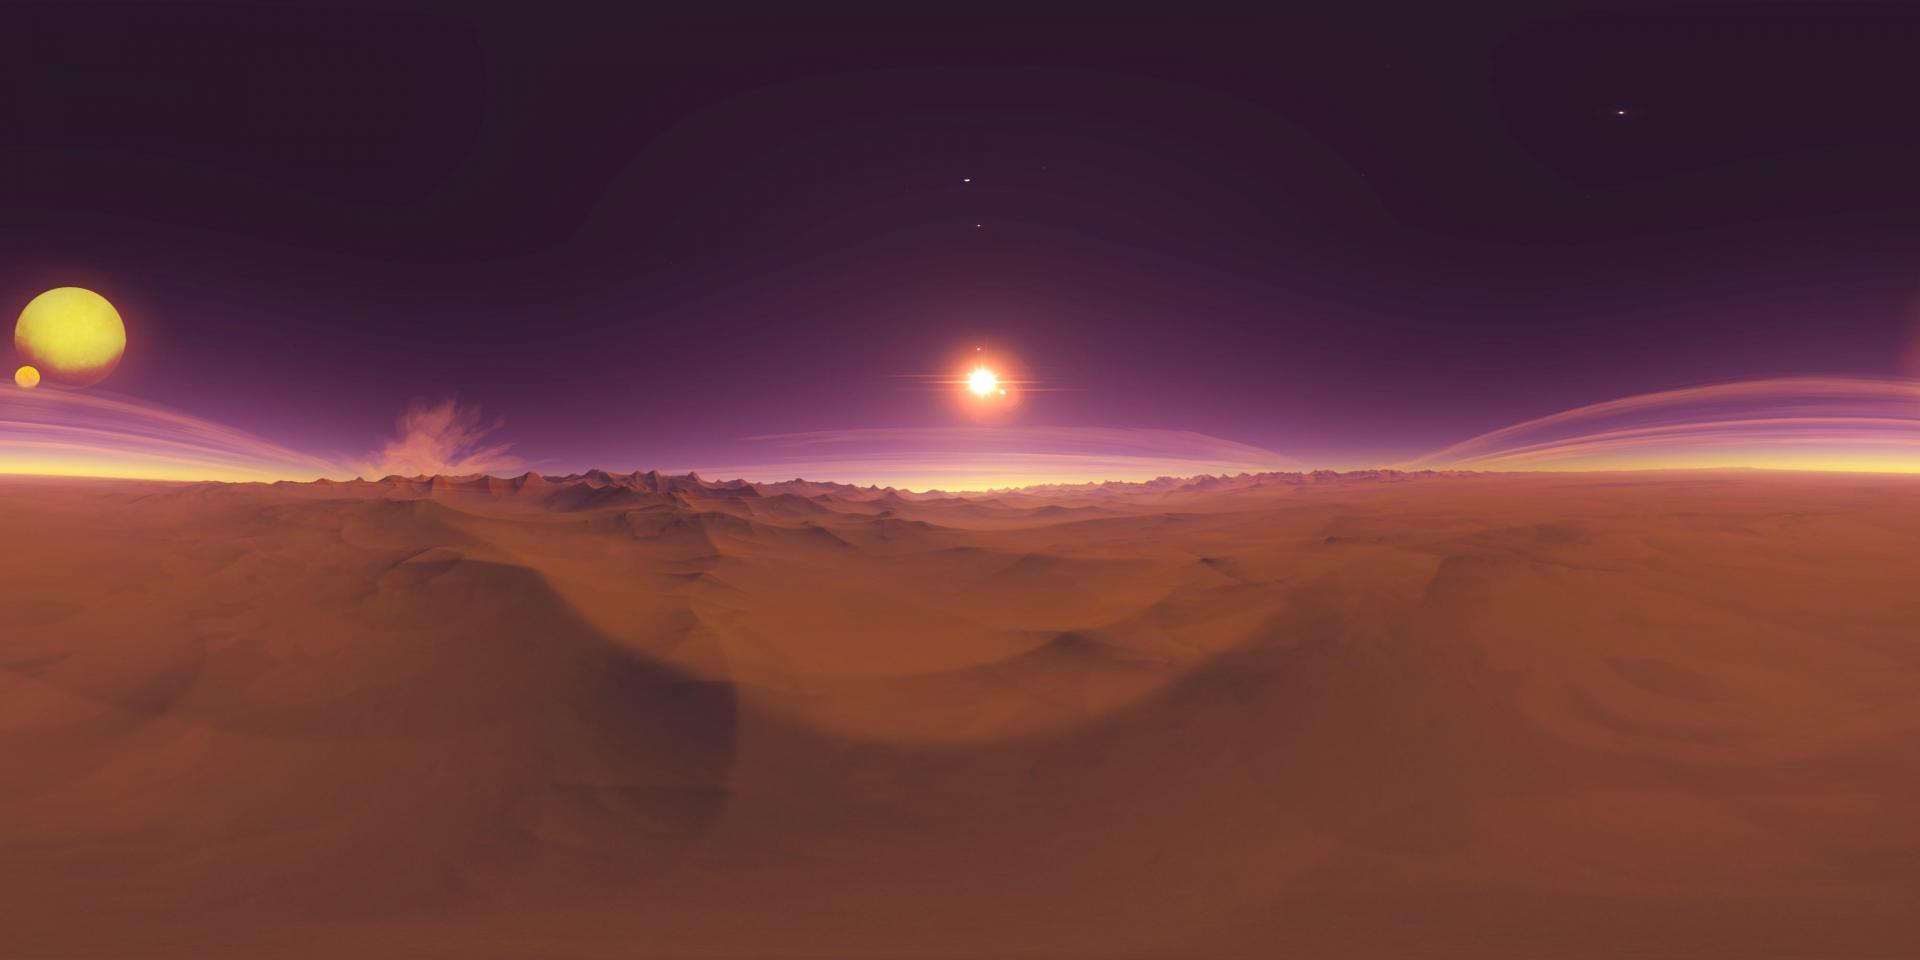 HDRI_desert_sunset3b